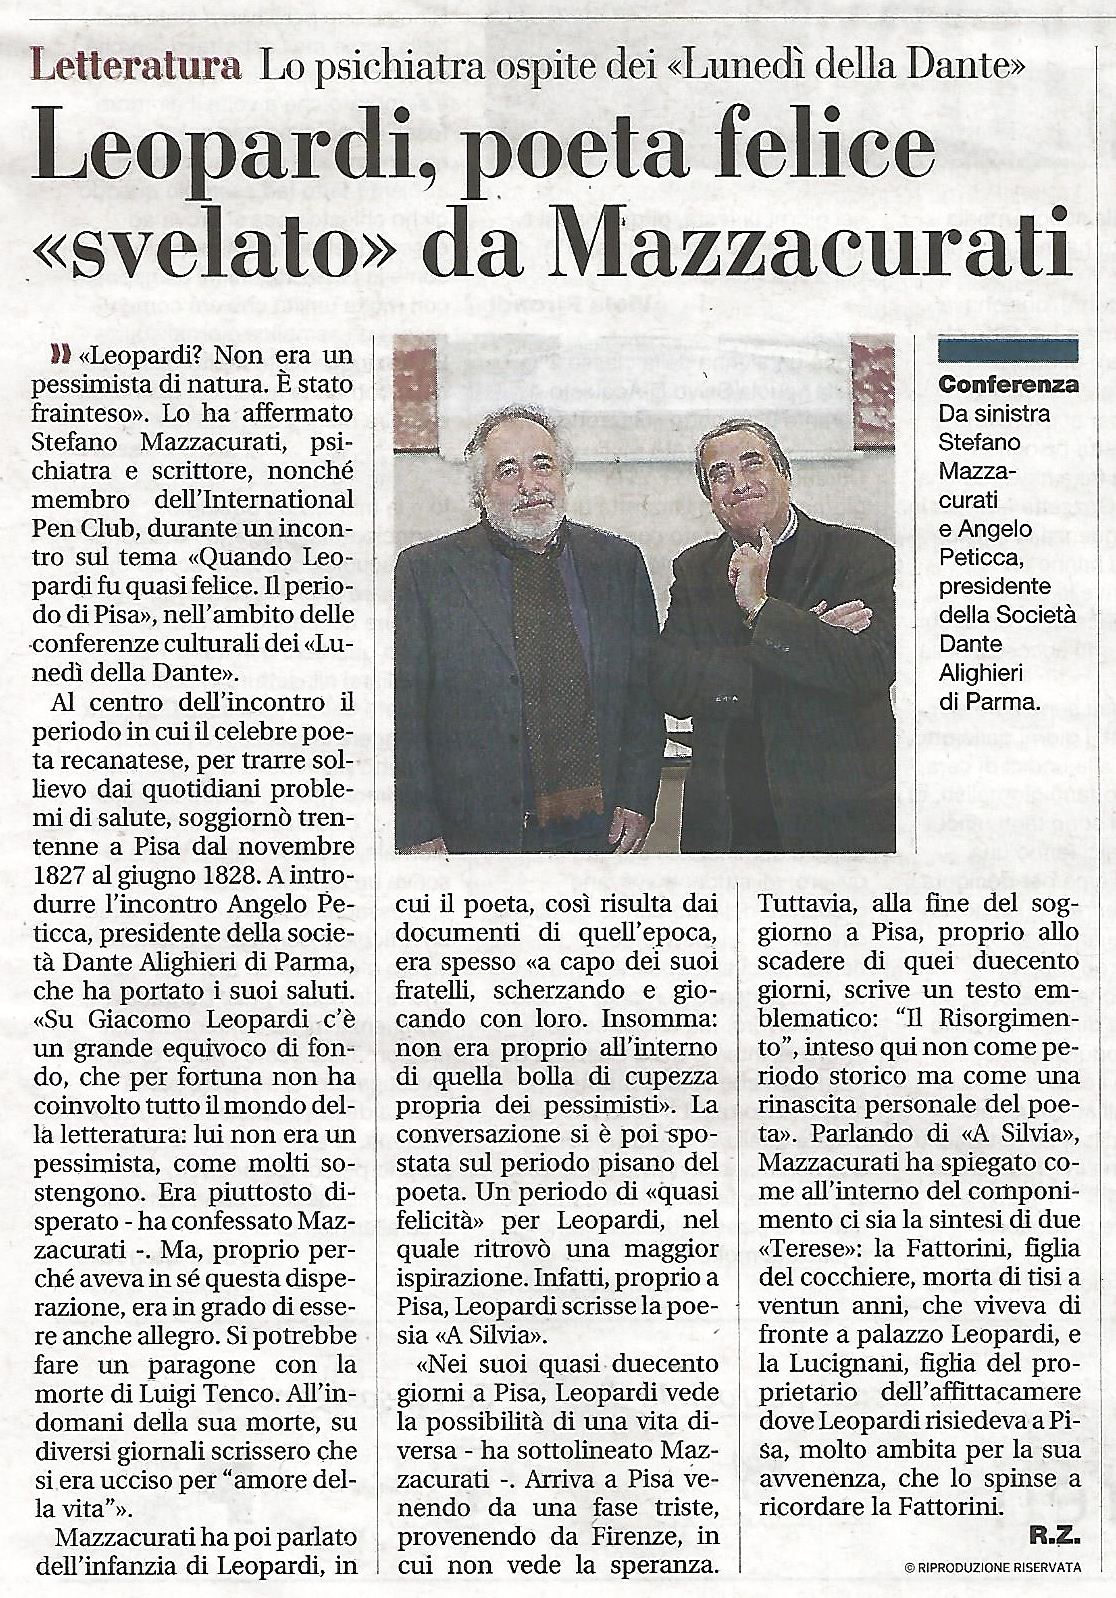 Ancora la Gazzetta a riportare lo svolgimento del Lunedì della Dante col dott. Stefano Mazzacurati